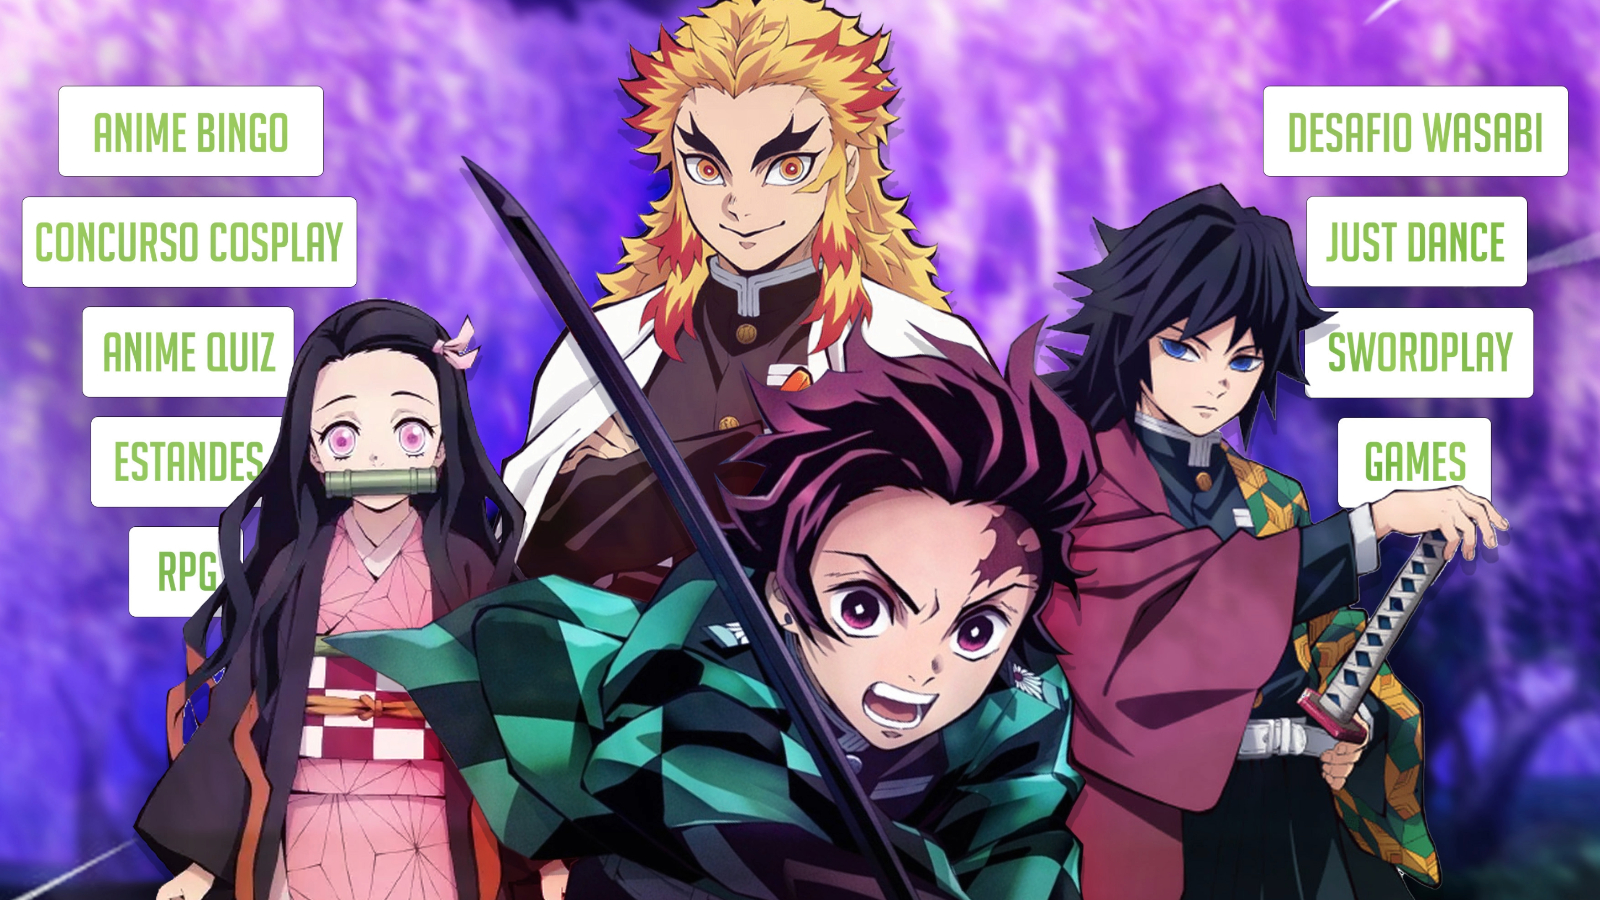 Os animes da temporada de verão de 2023 prometem - Animedia